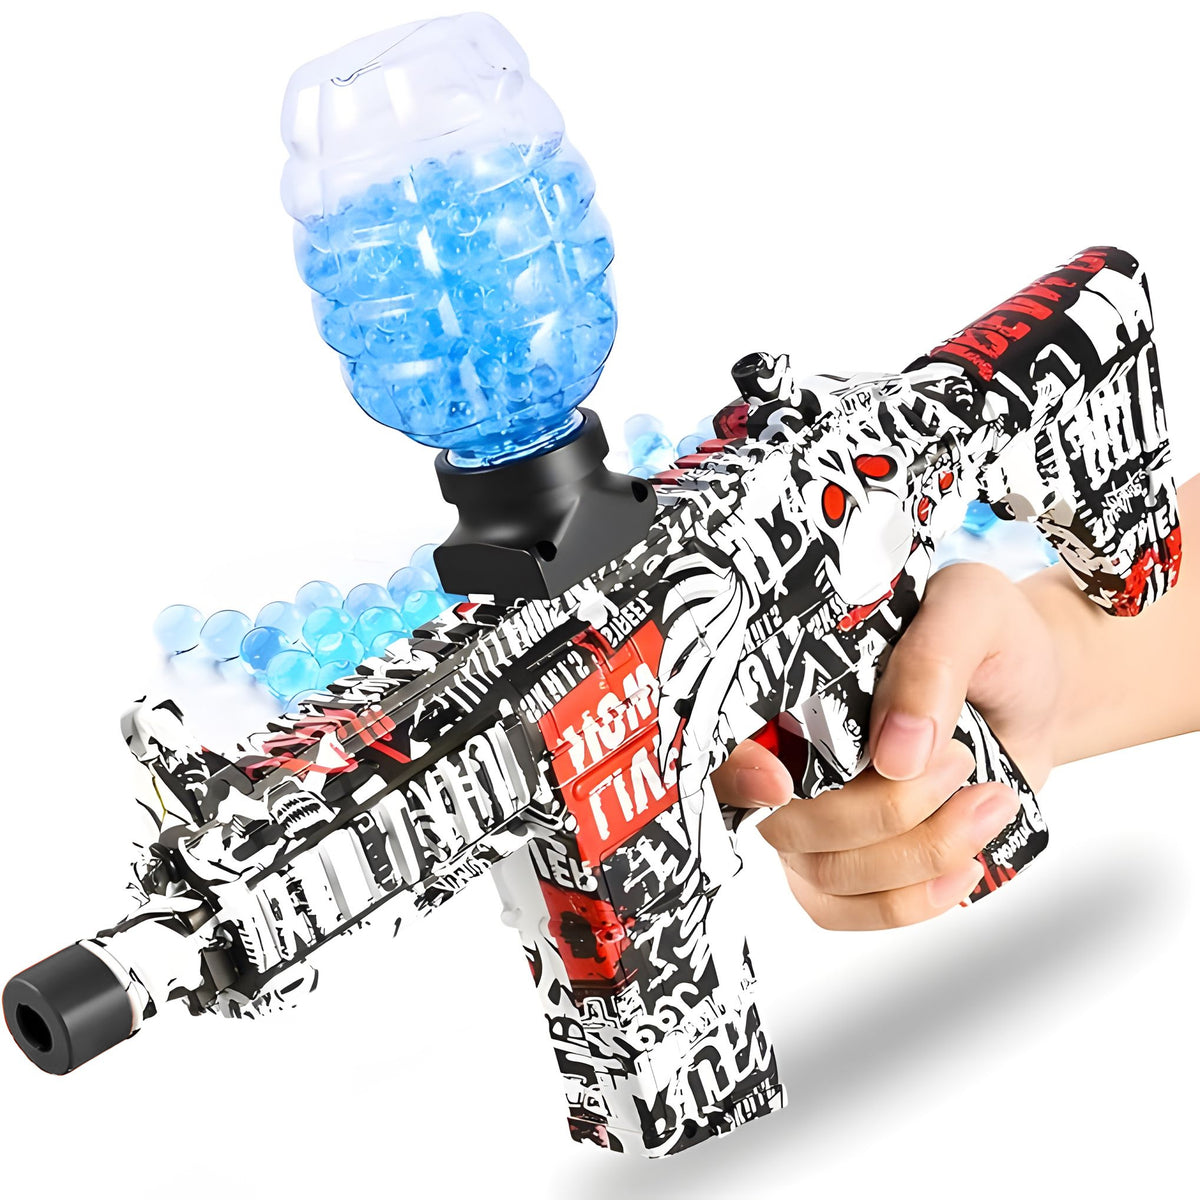 Electric Toy Gun Long Range Safe Firing For Kids